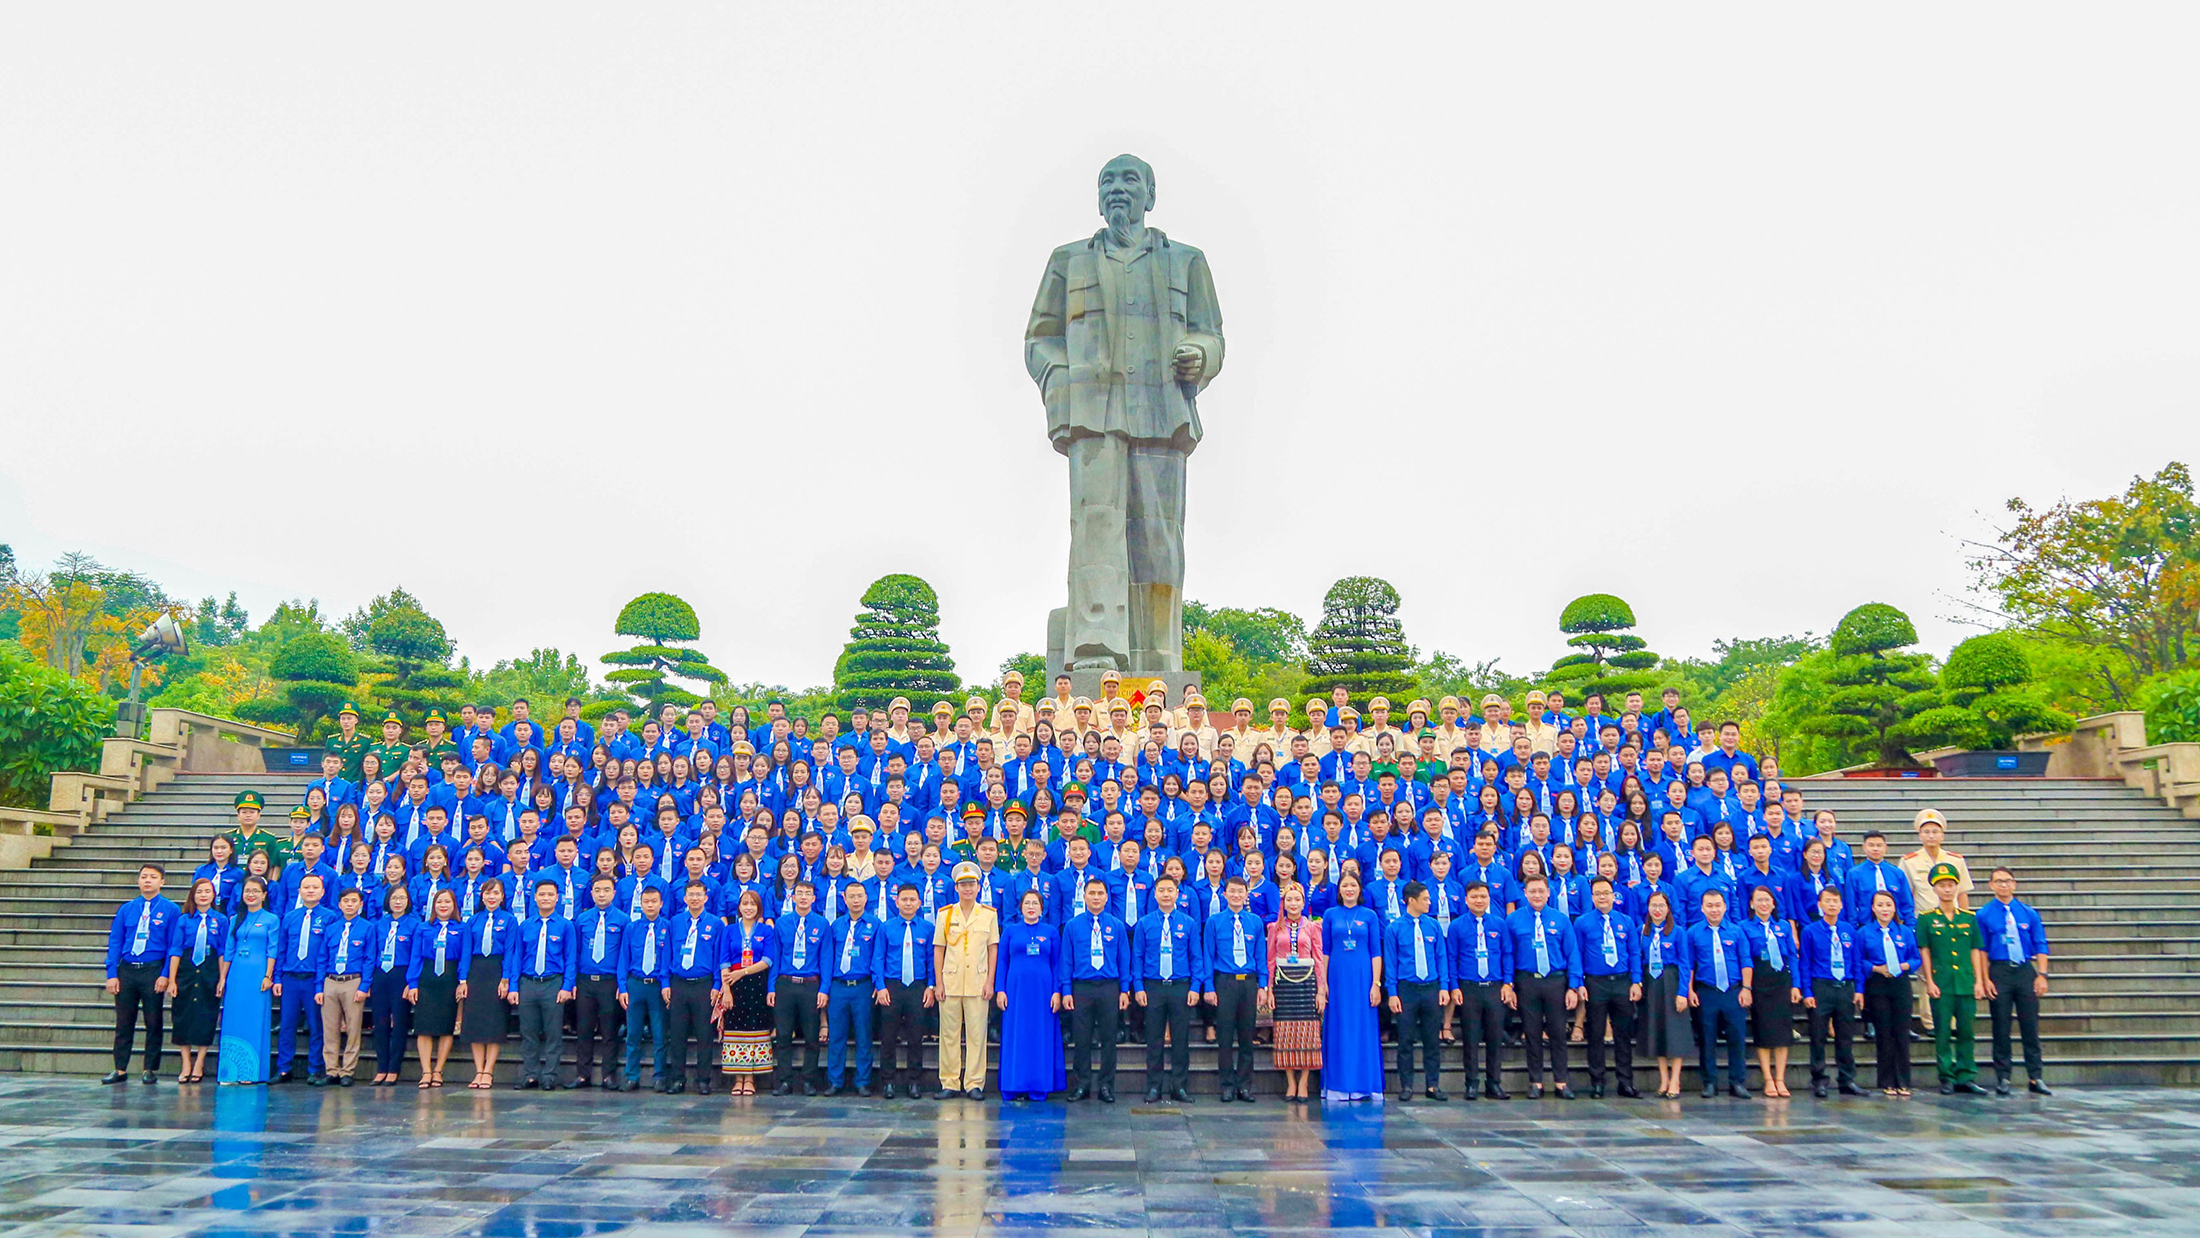 Đội ngũ cán bộ Đoàn chủ chốt trước thềm Đại hội Đoàn toàn tỉnh Nghệ An  lần thứ XVIII, nhiệm kỳ 2022 - 2027.